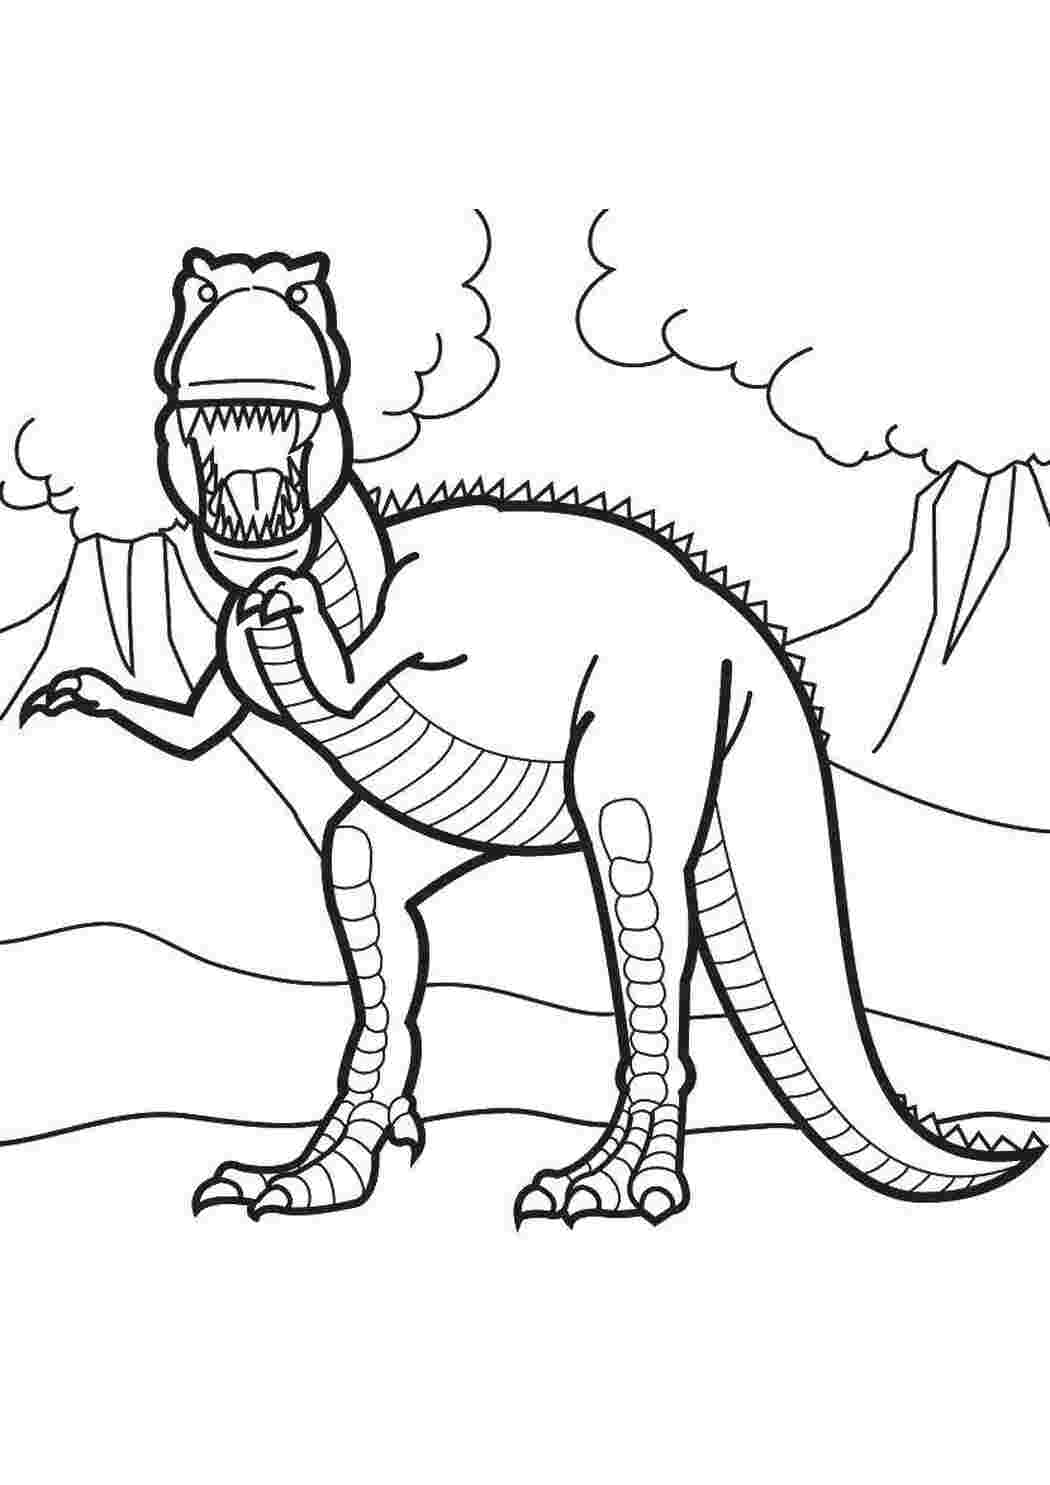 Динозавры для раскрашивания. Дино рекс раскраска. Терекс динозавры раскраска. Динозавр раскраска для детей. Шонизавр раскраска.